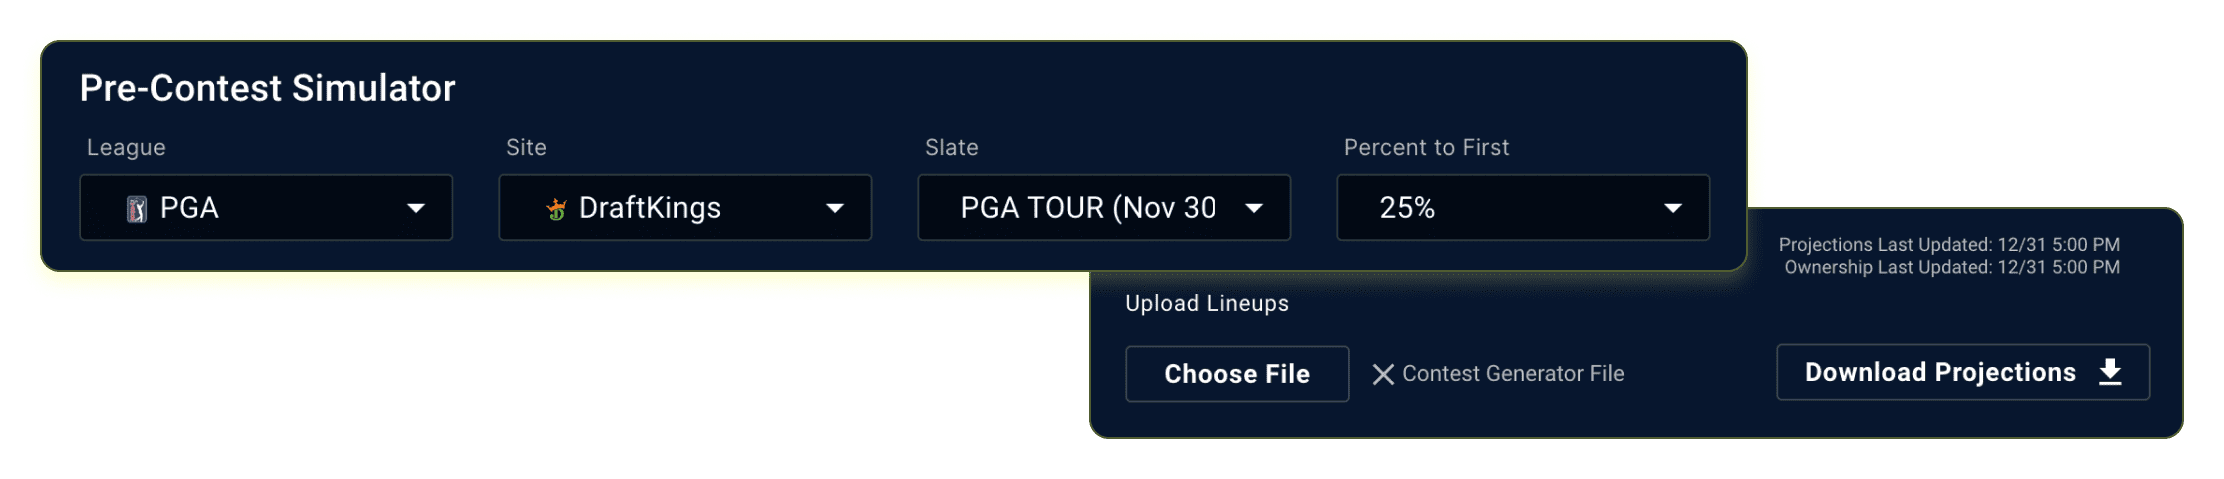 Golf & PGA DFS Pre-Contest Sims